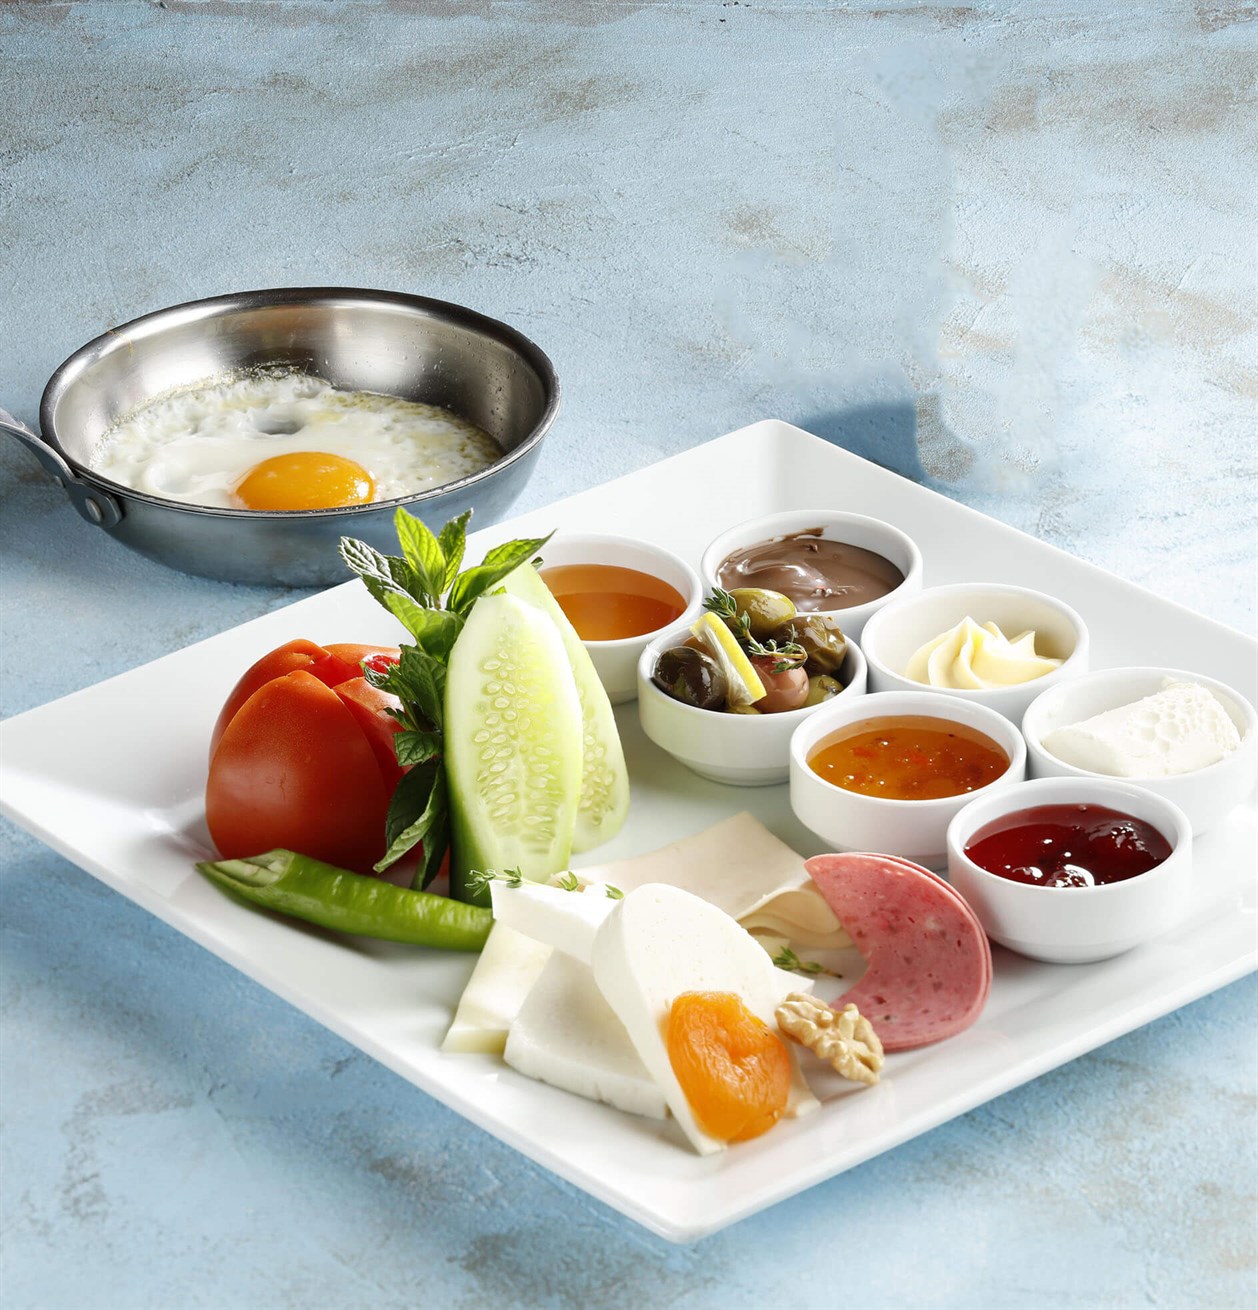 Sivas'ta Kahvaltı Yapılacak En Güzel Yerler Nerelerdir?